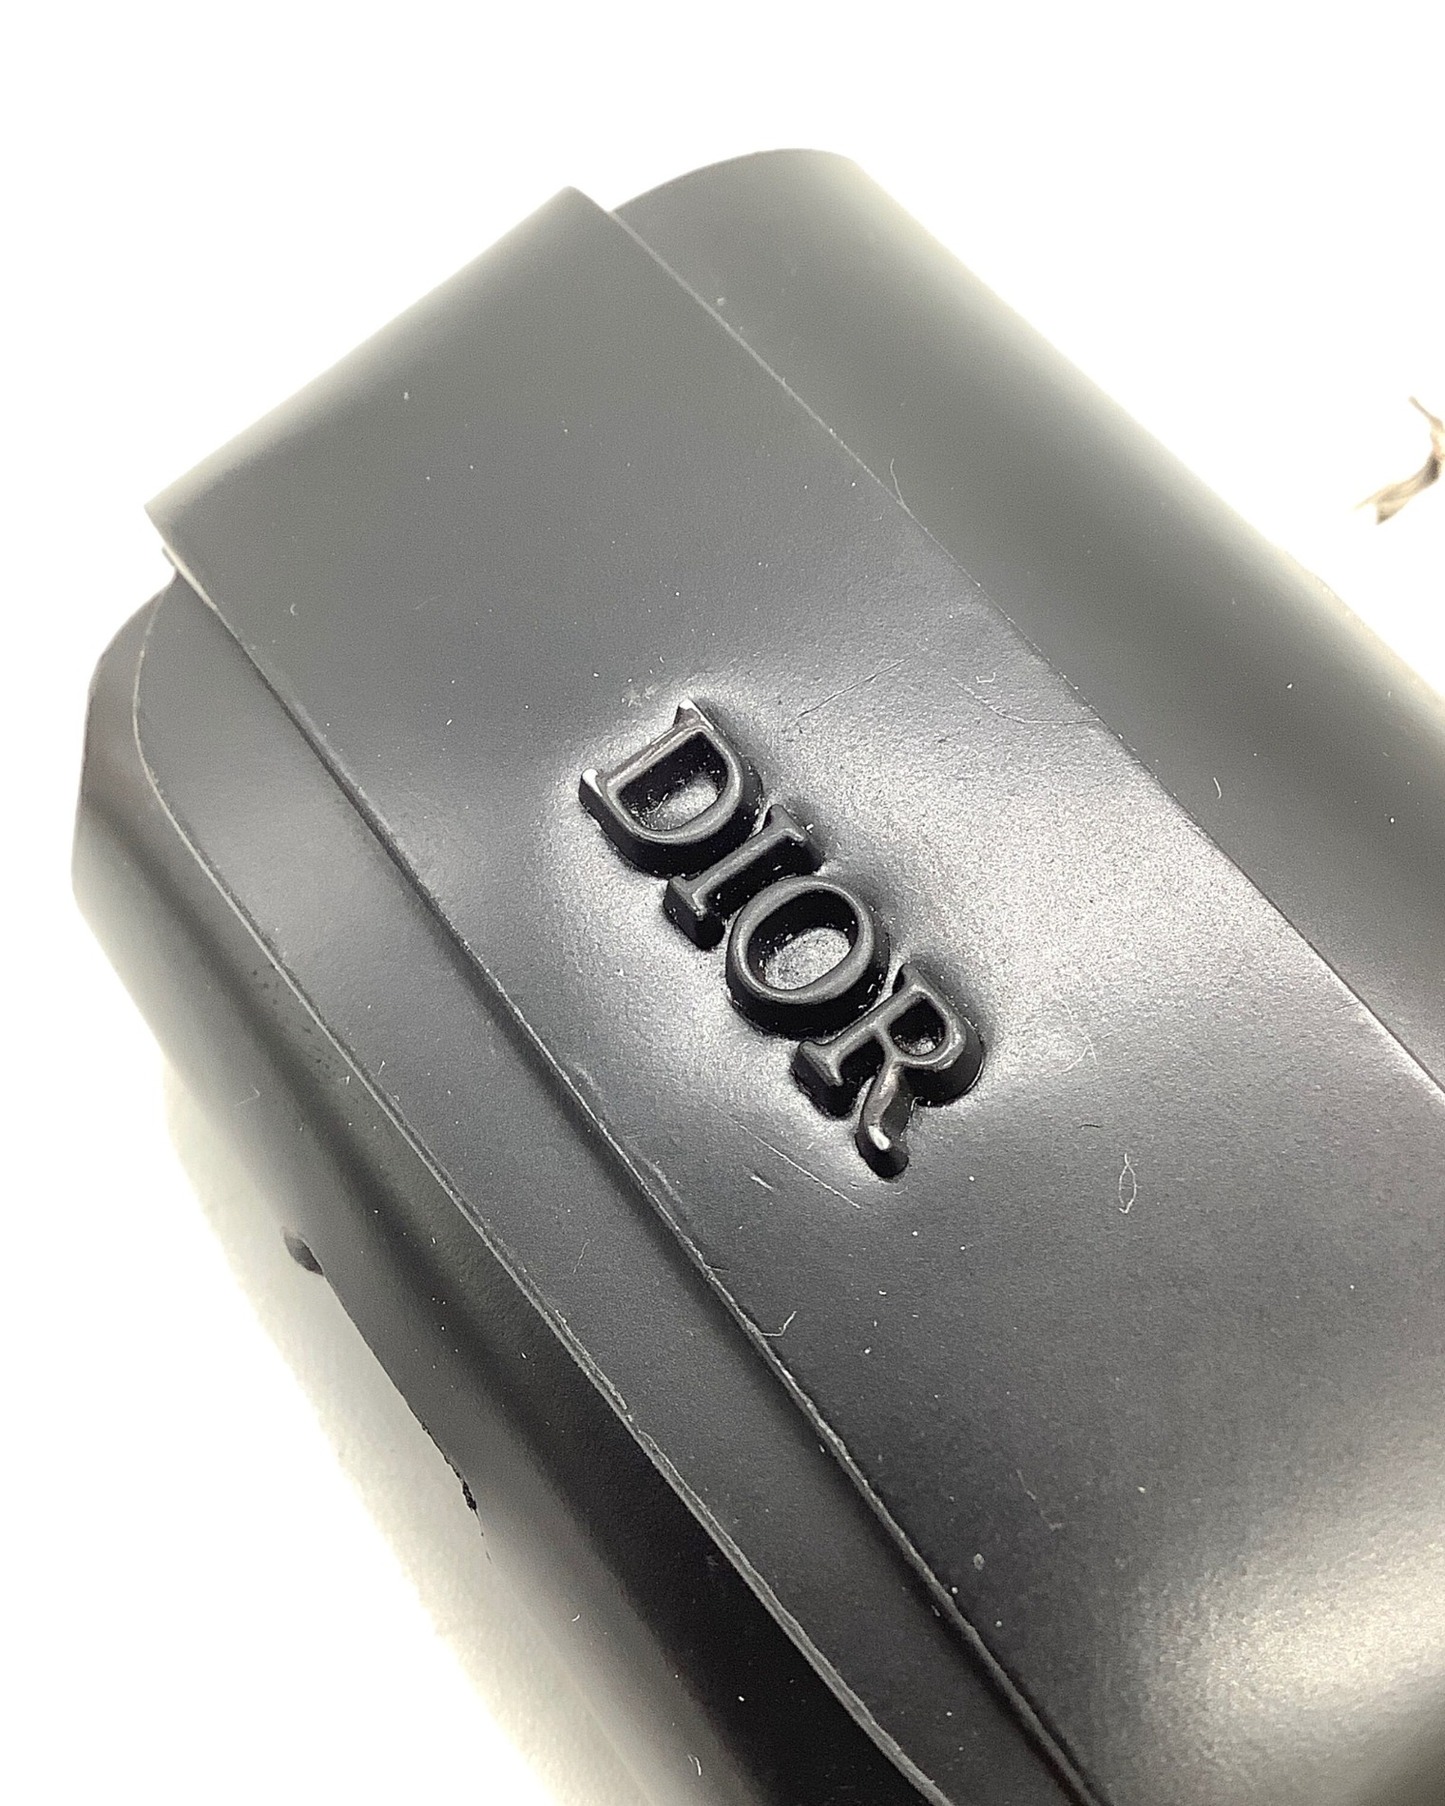 Dior (ディオール) AirPods用ケース ブラック